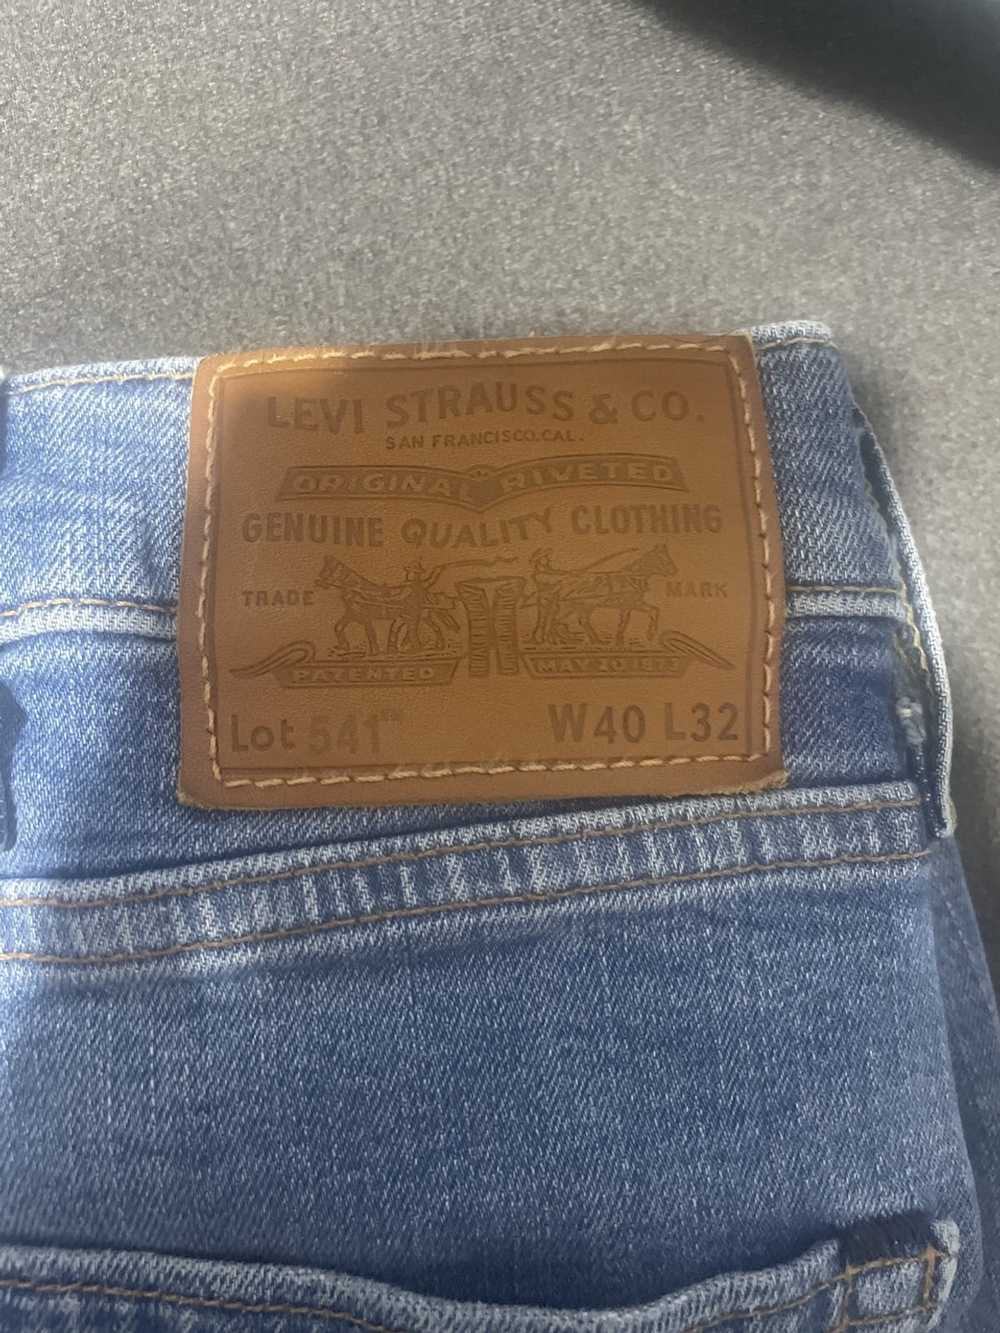 Levi's Vintage Levi’s 501 jeans - image 6